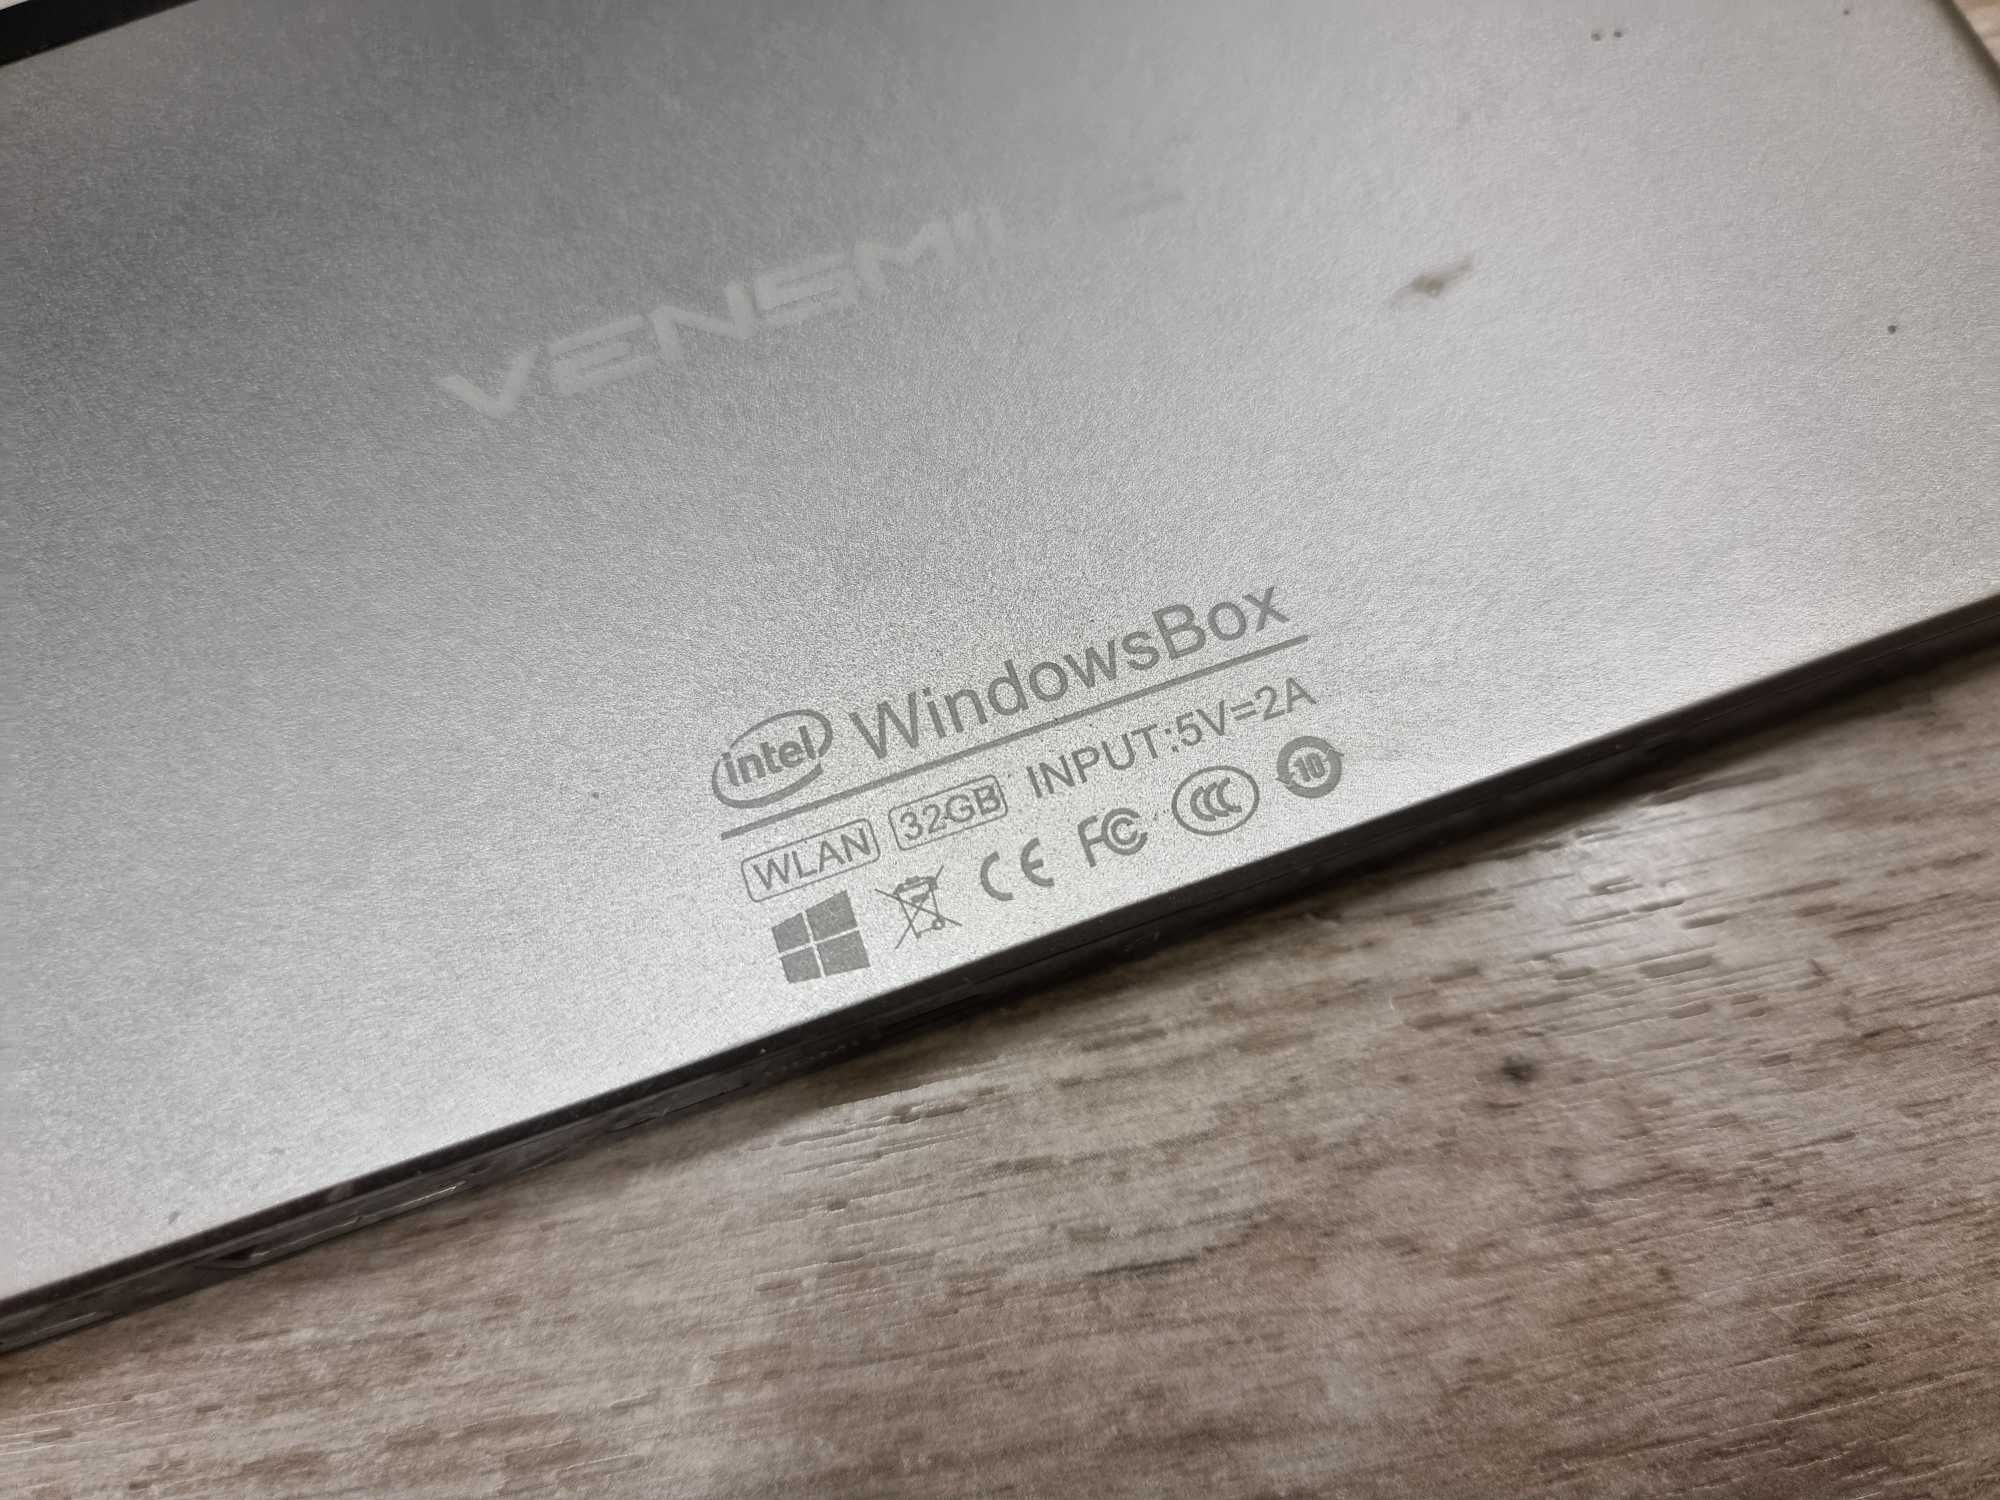 Windows BOX / Tv Windows BOX Vensmile Mini Smart PC Intel